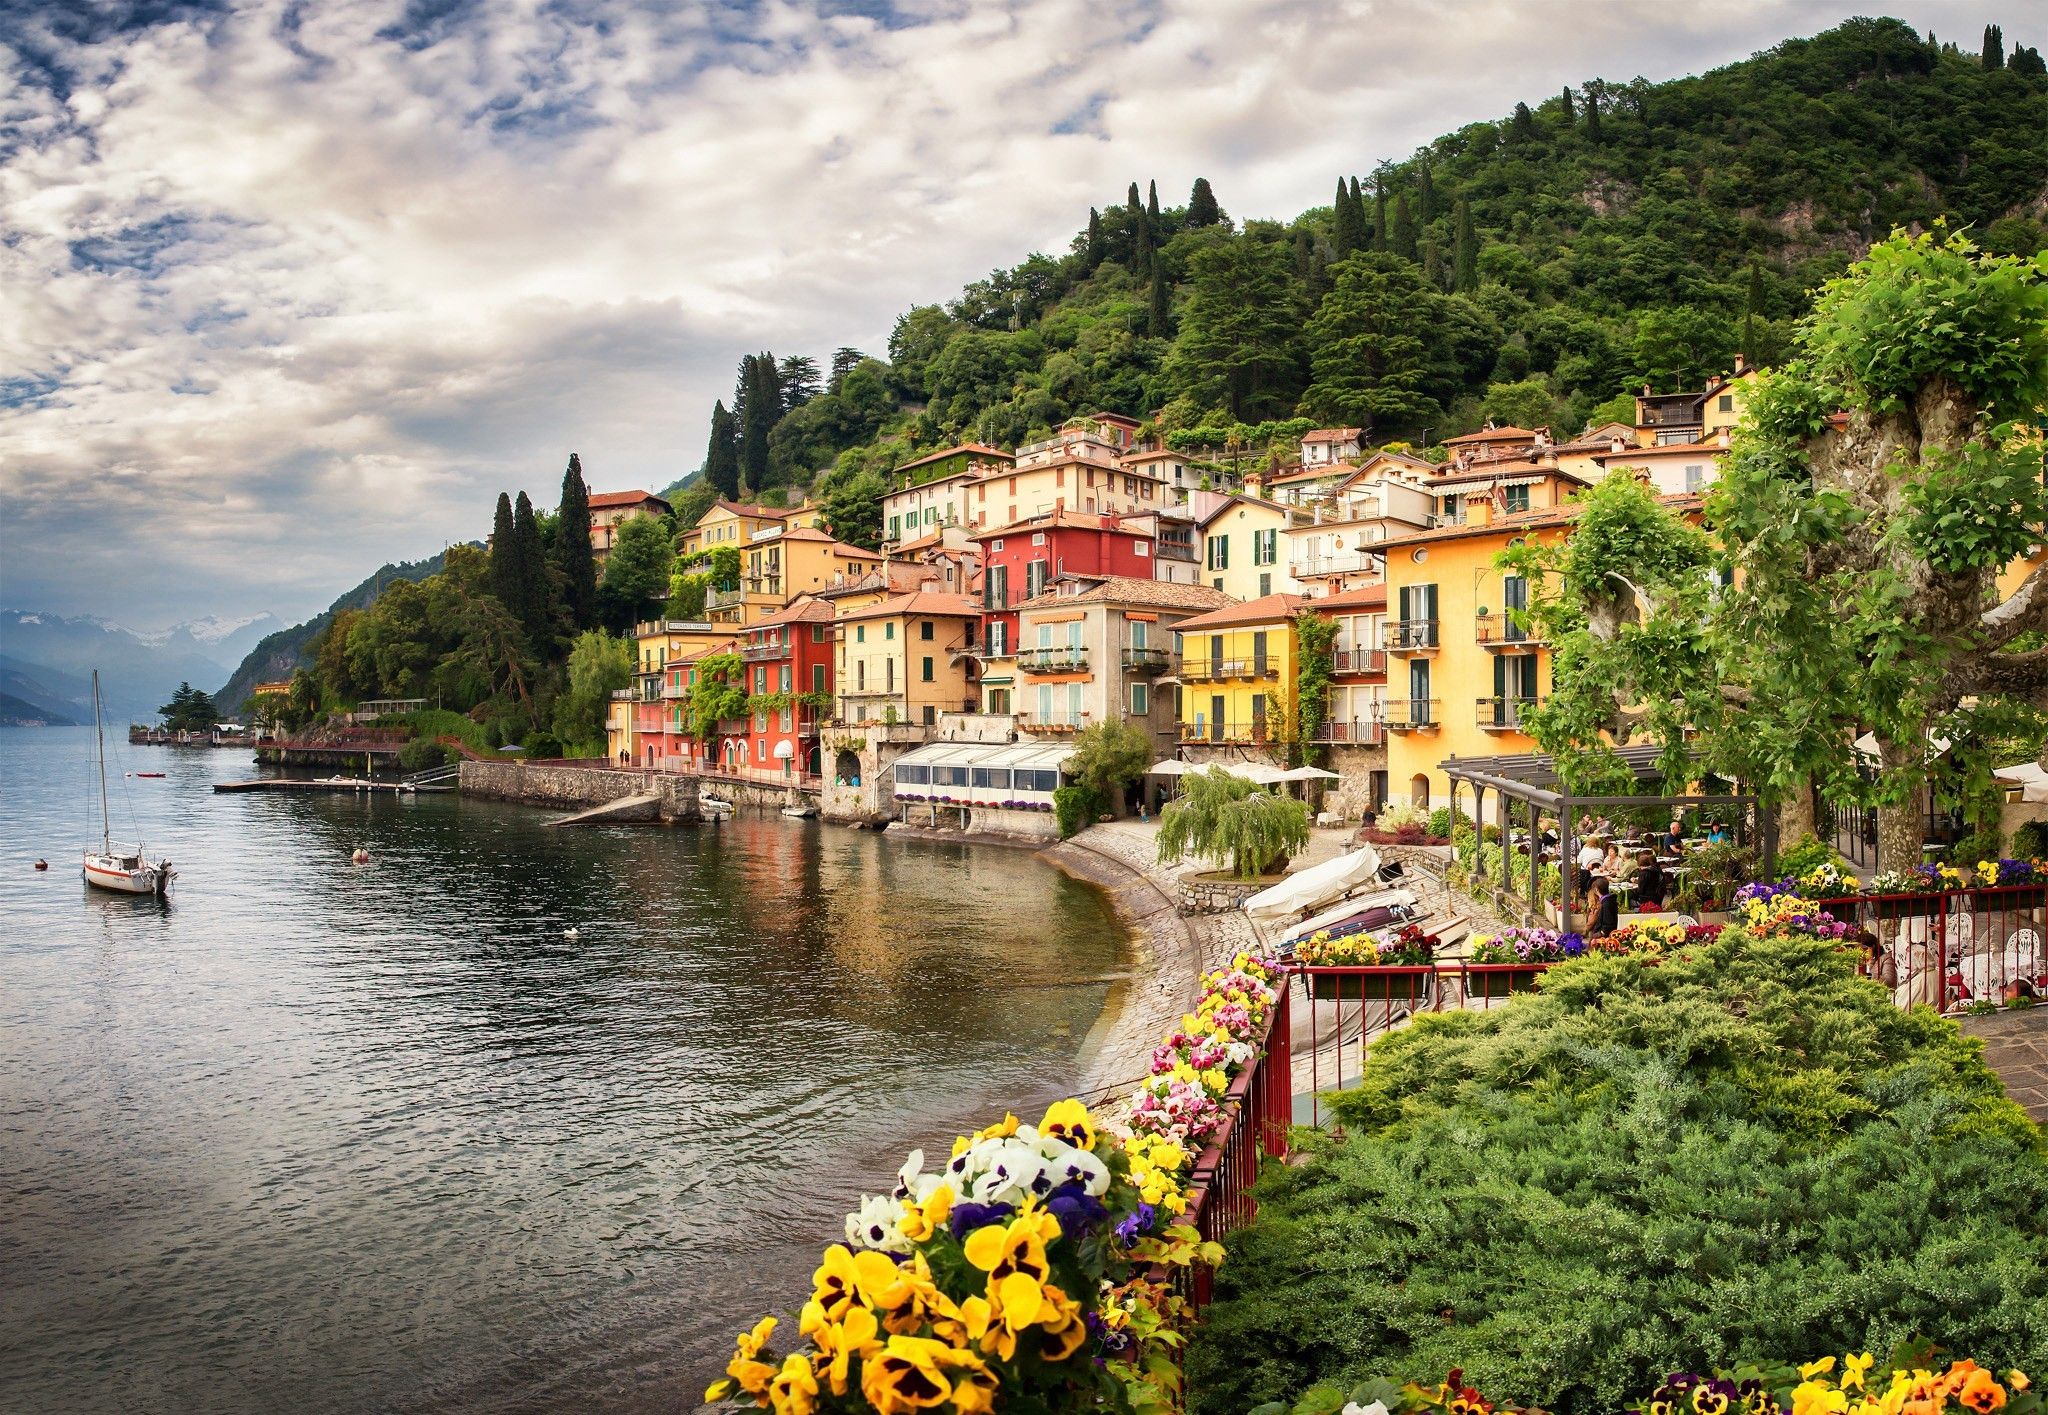 Beautiful Italian village on the coast